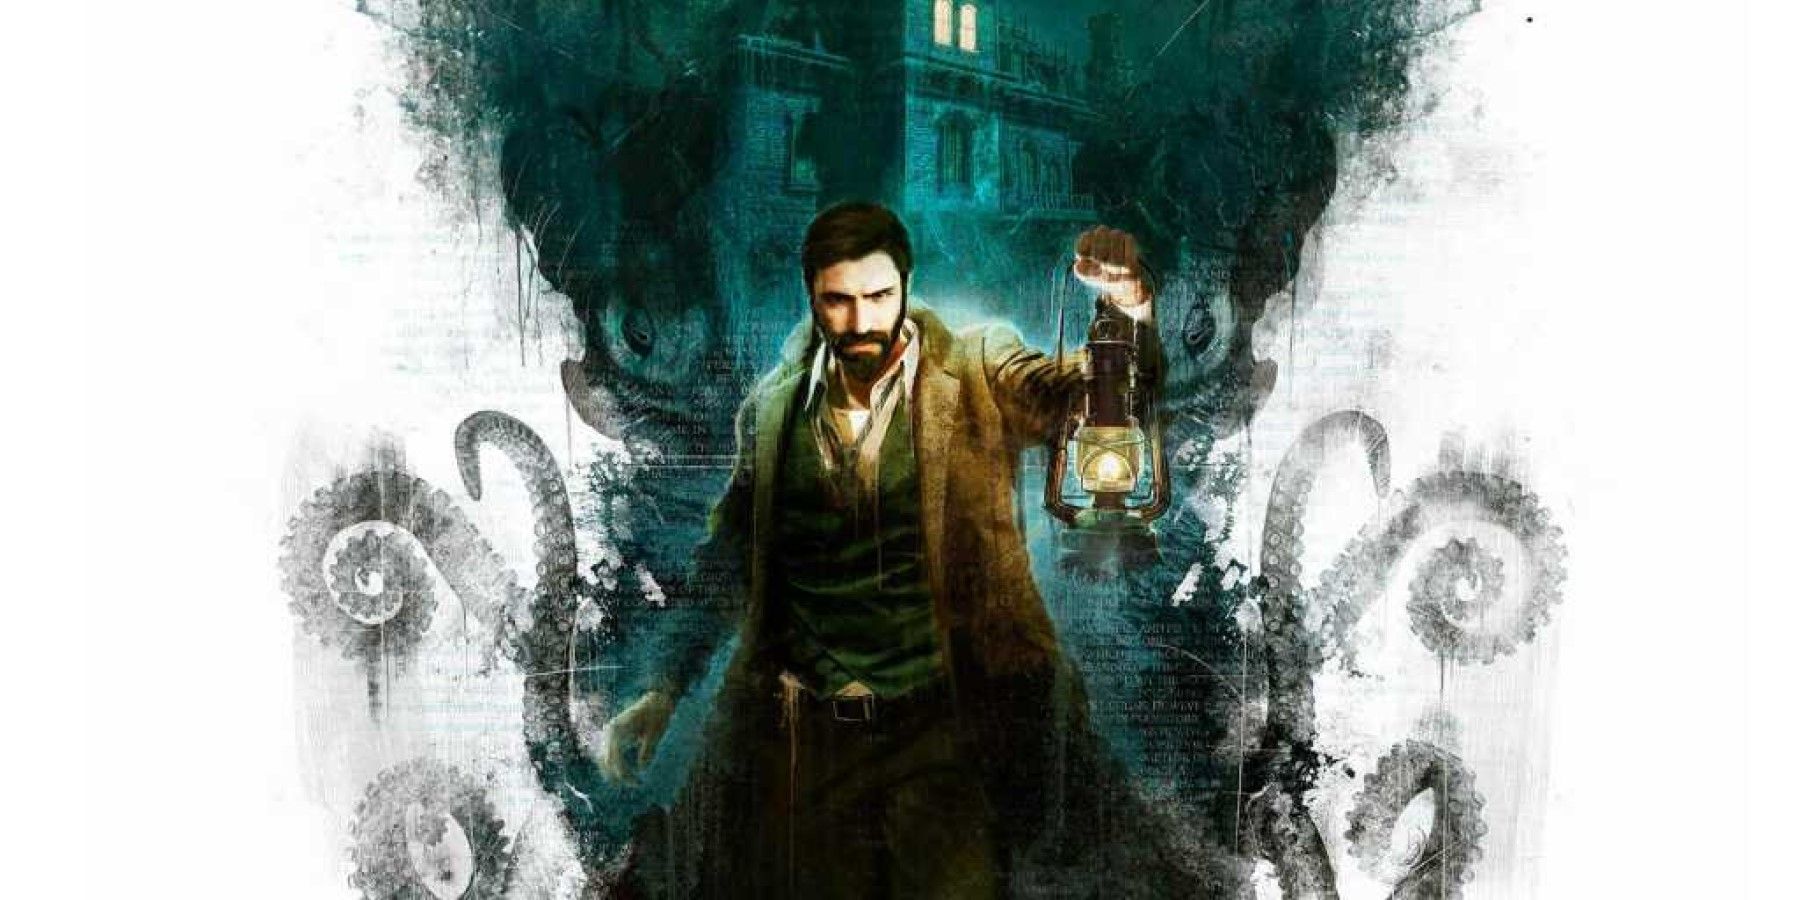 H.P. De invloed van Lovecraft op gaming uitgelegd